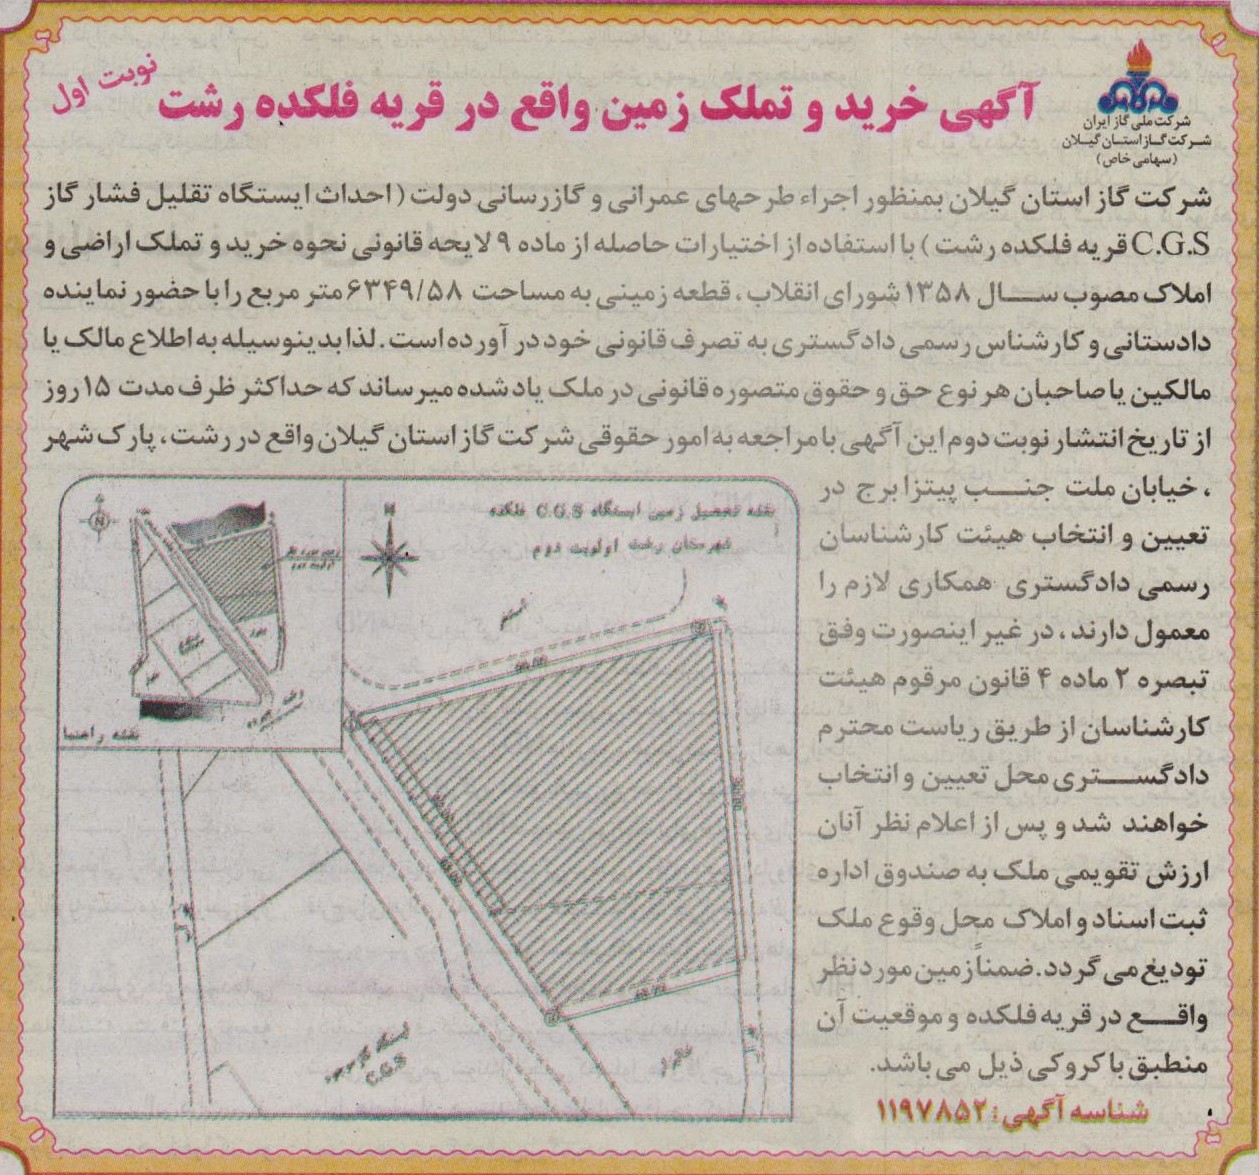 خرید و تملک زمین واقع در قریه فلکده رشت - 6 مهر 1400